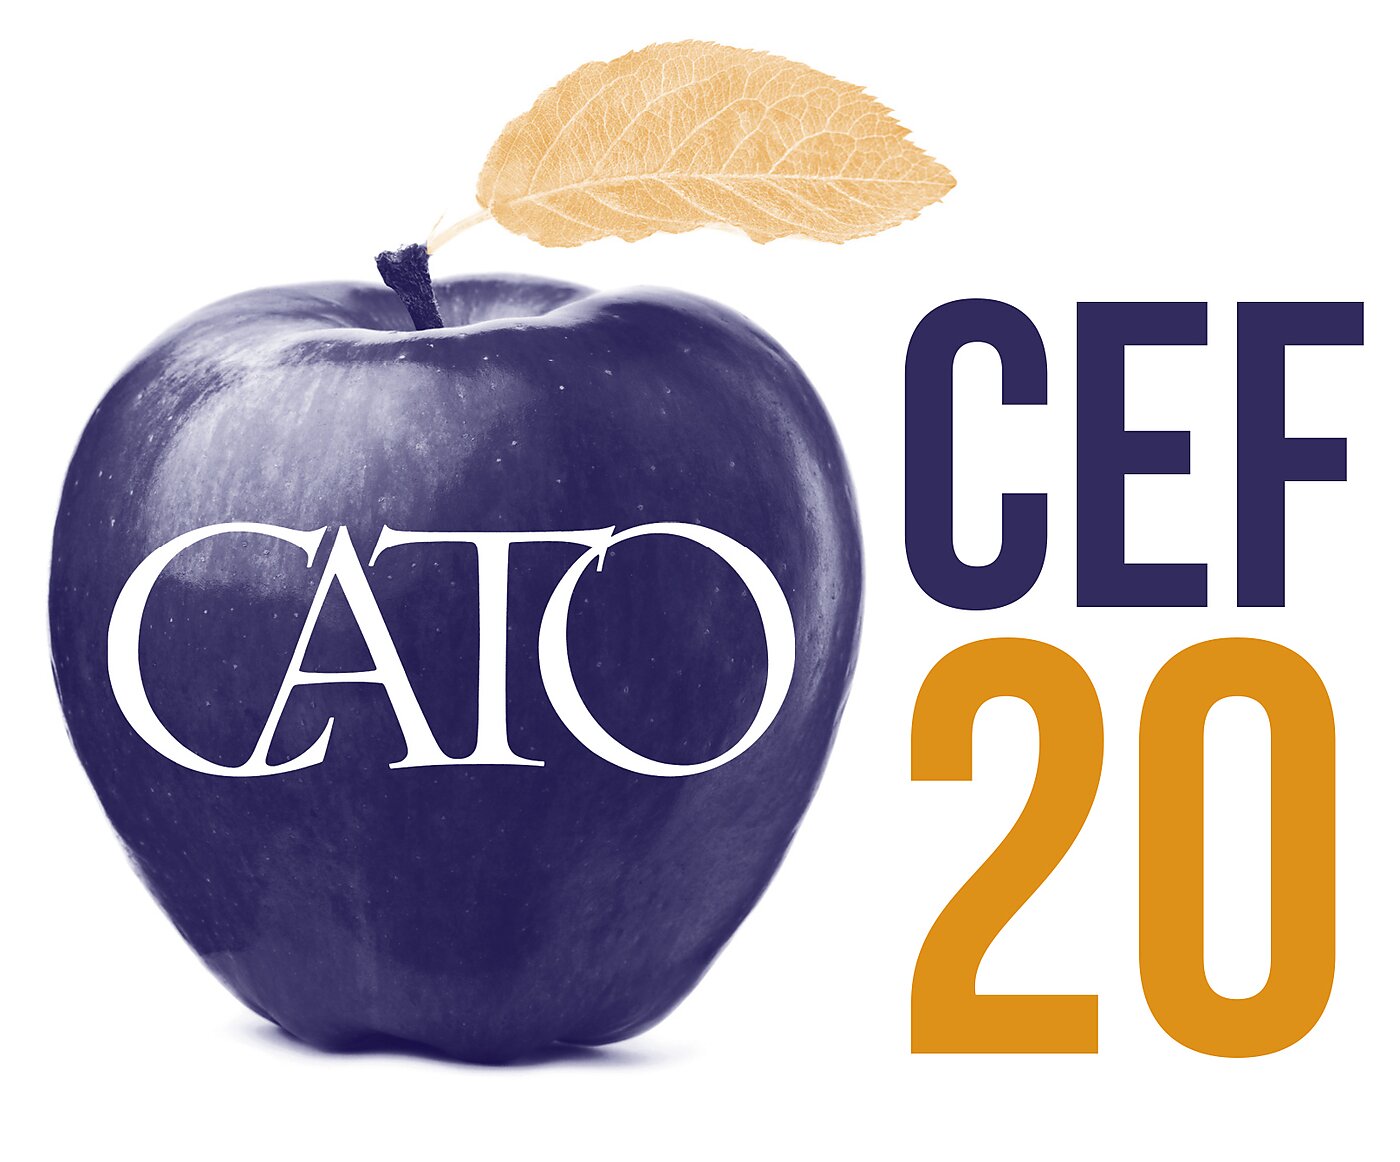 Cato CEF20 logo